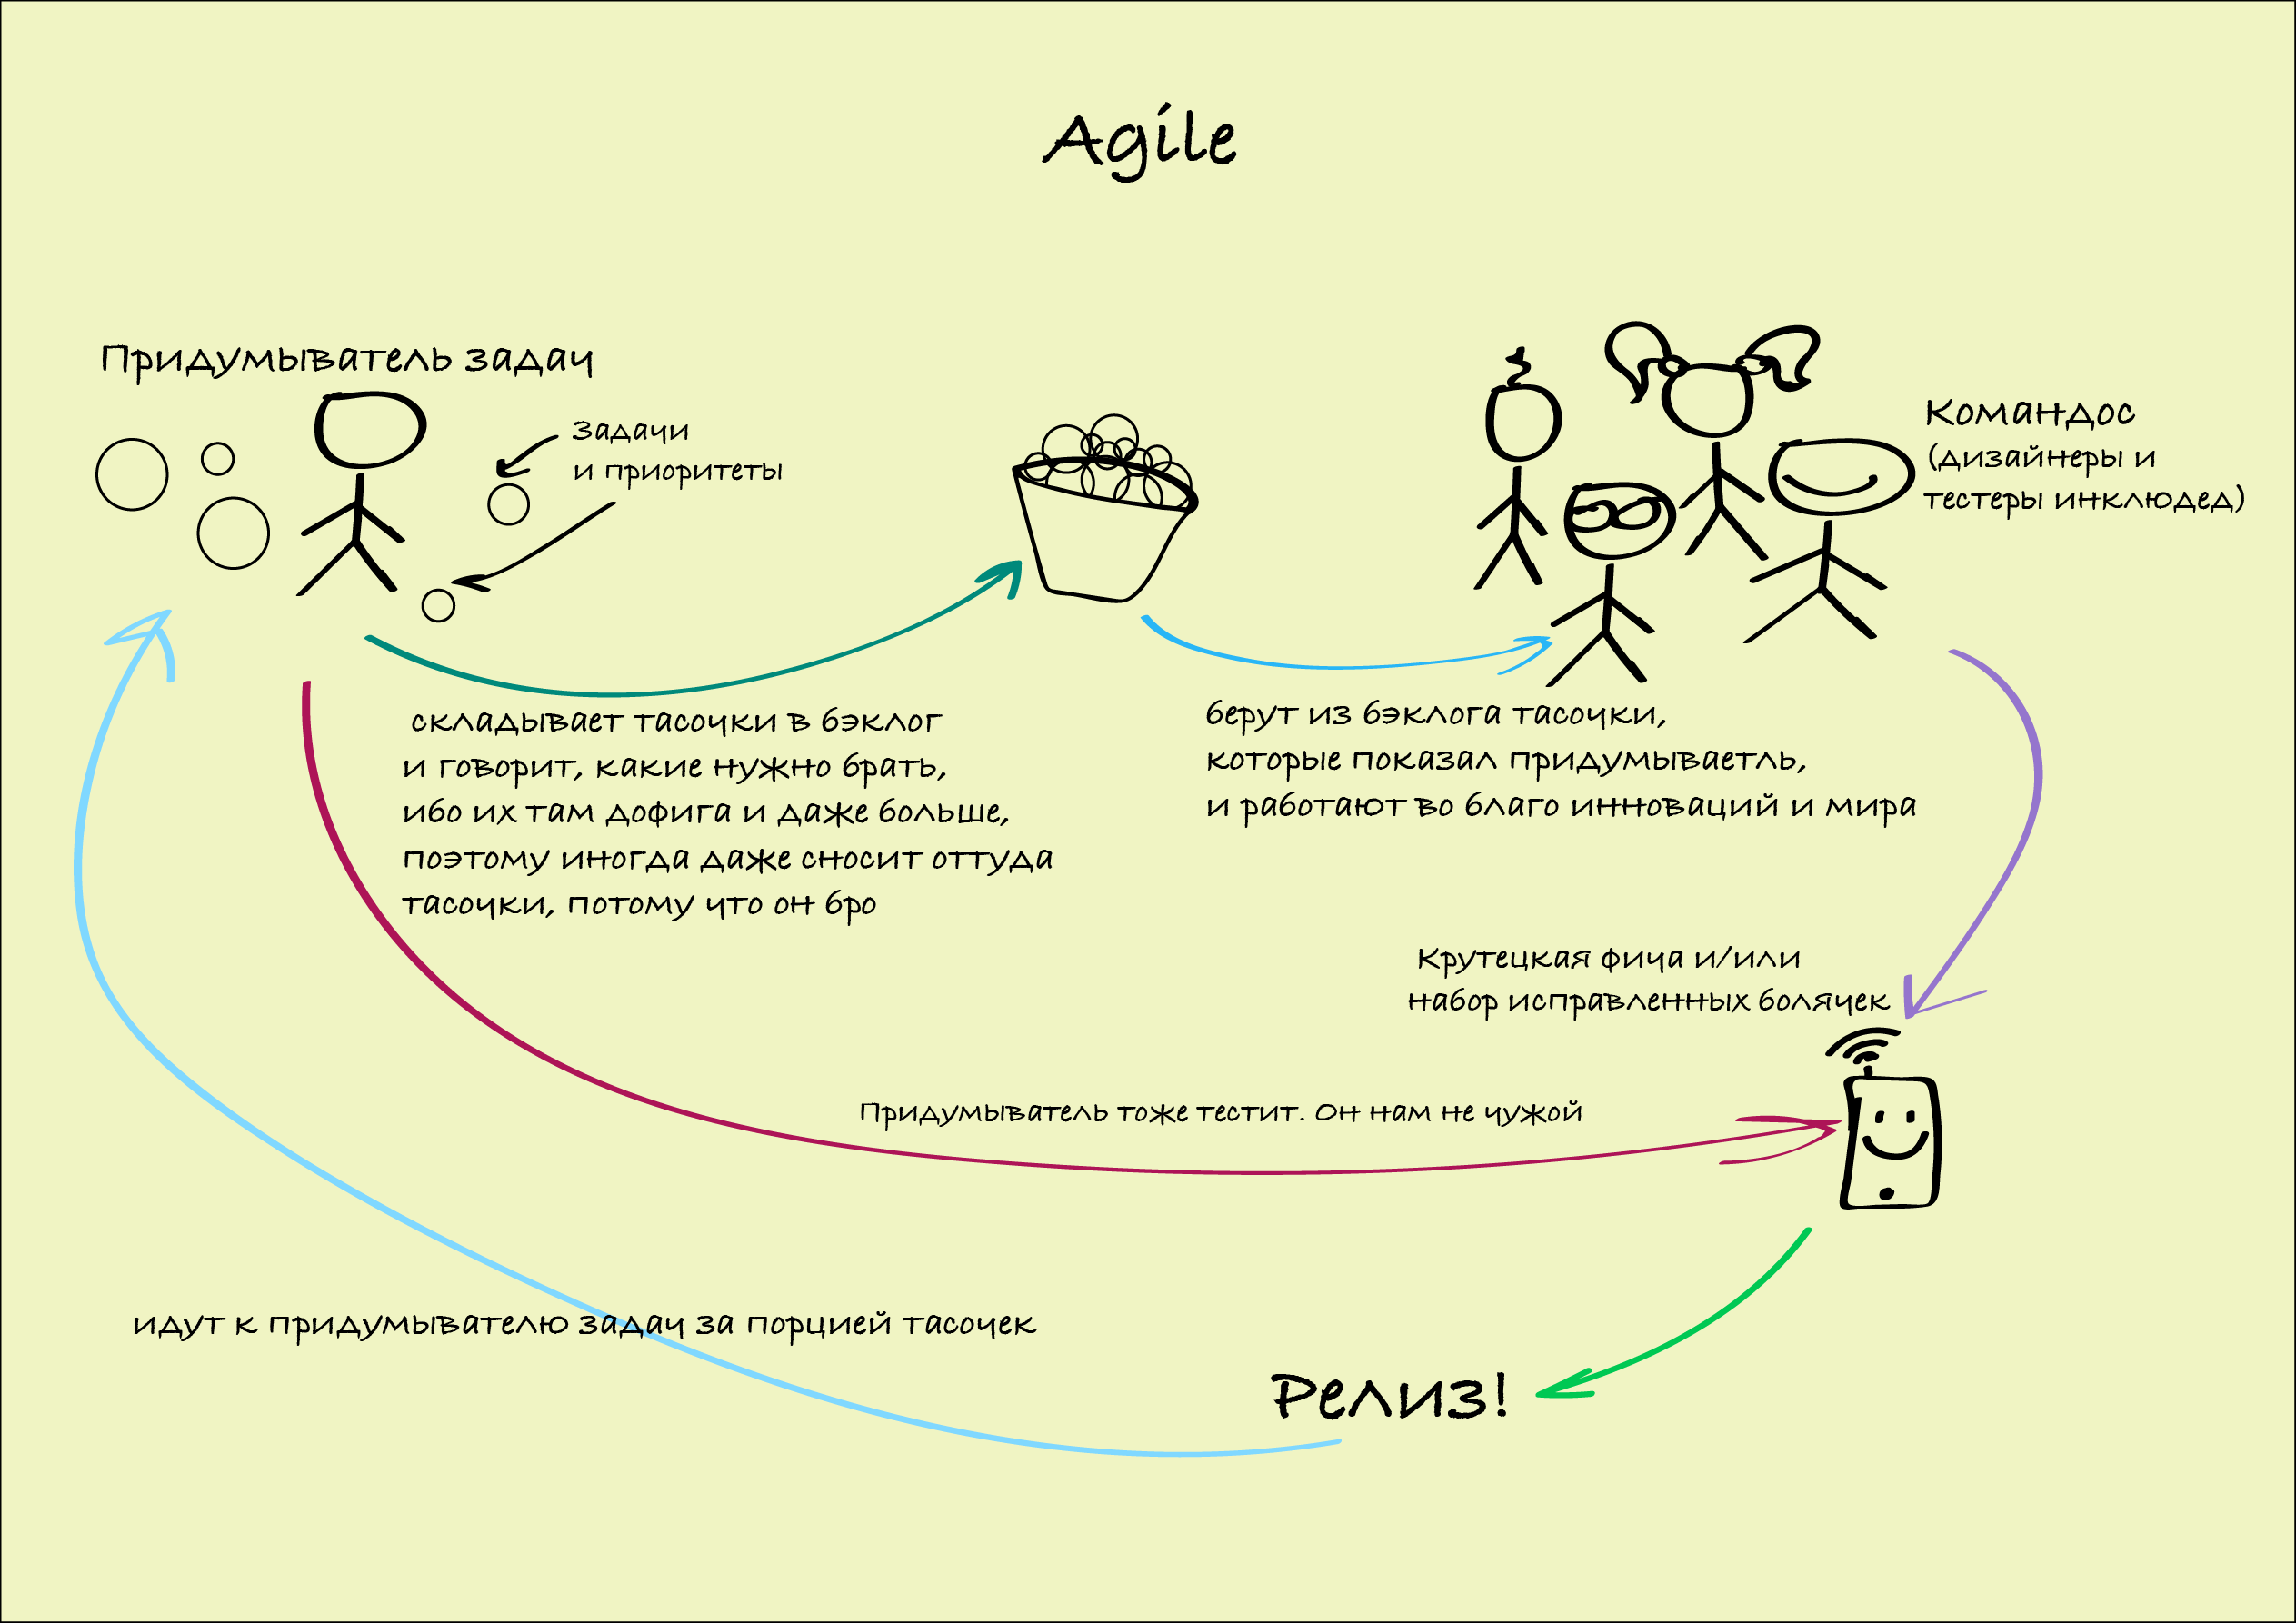 Методология разработки Agile. Методы управления Agile. Agile управление проектами. Процесс разработки по Agile. Фича это простыми словами